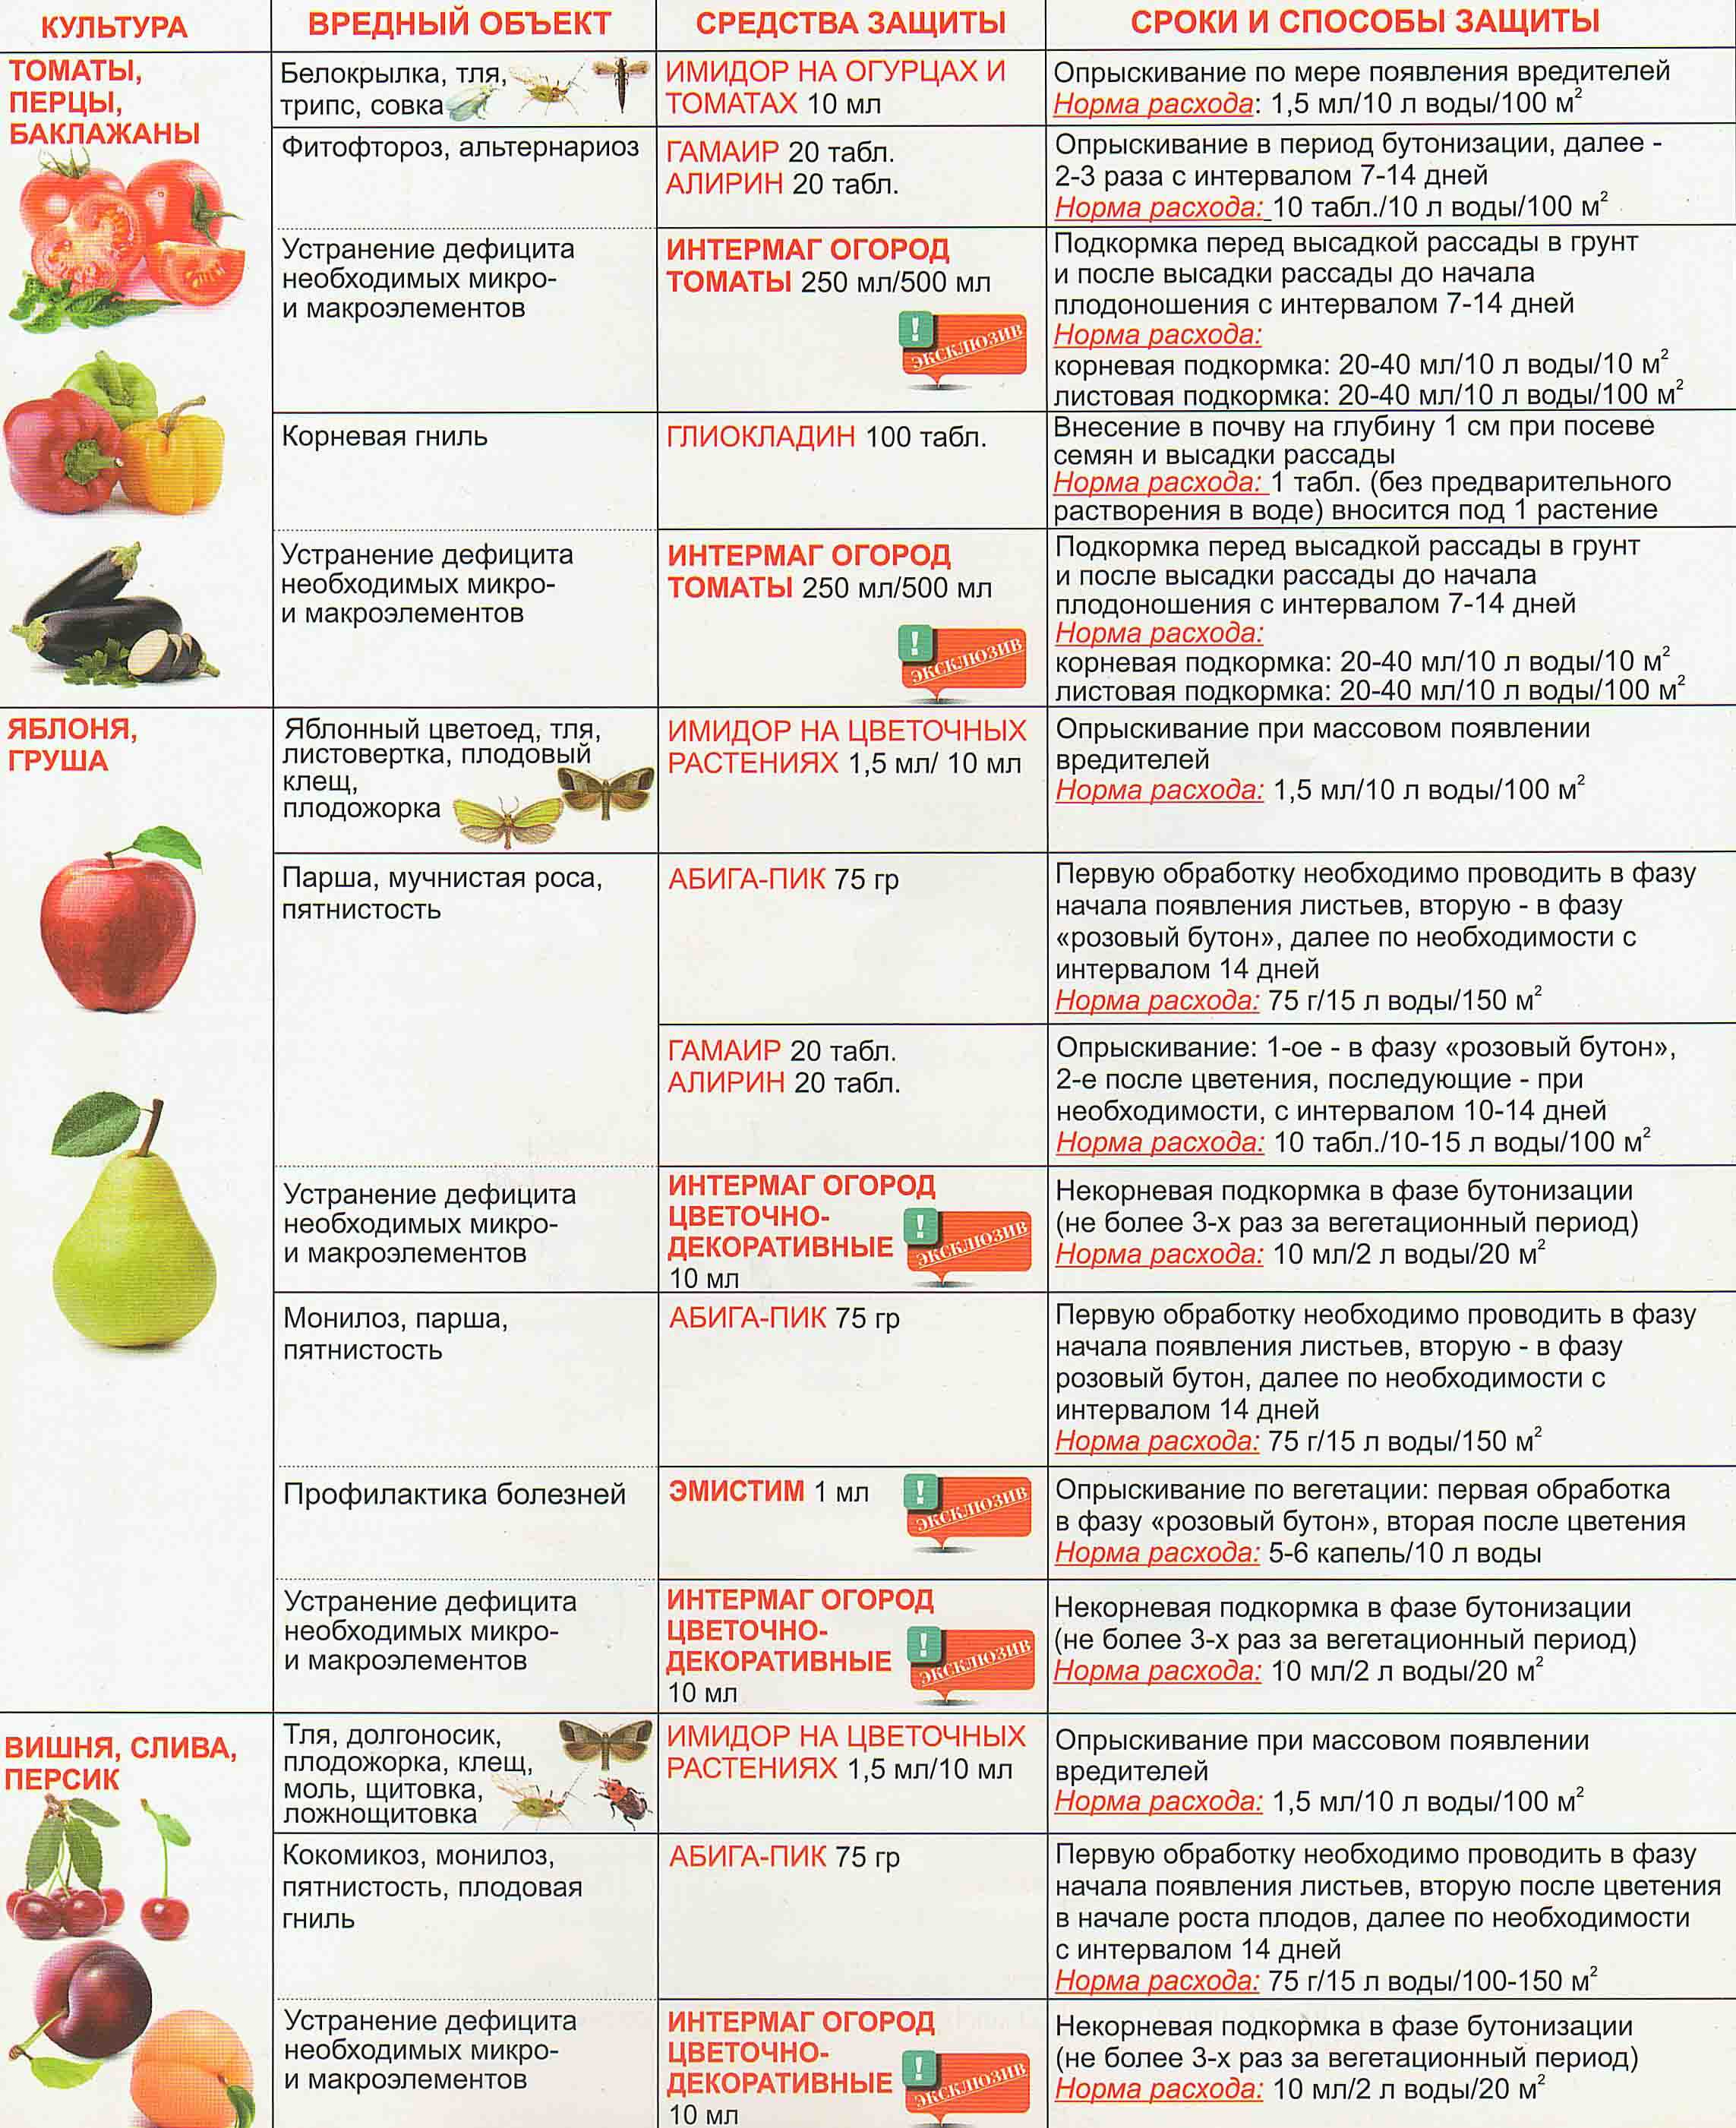 Подкормка персика. Схема подкормки персика. Схема удобрения плодовых деревьев. Таблица весенних подкормок плодовых деревьев и кустарников. Календарь внесения удобрений для плодовых деревьев таблица.